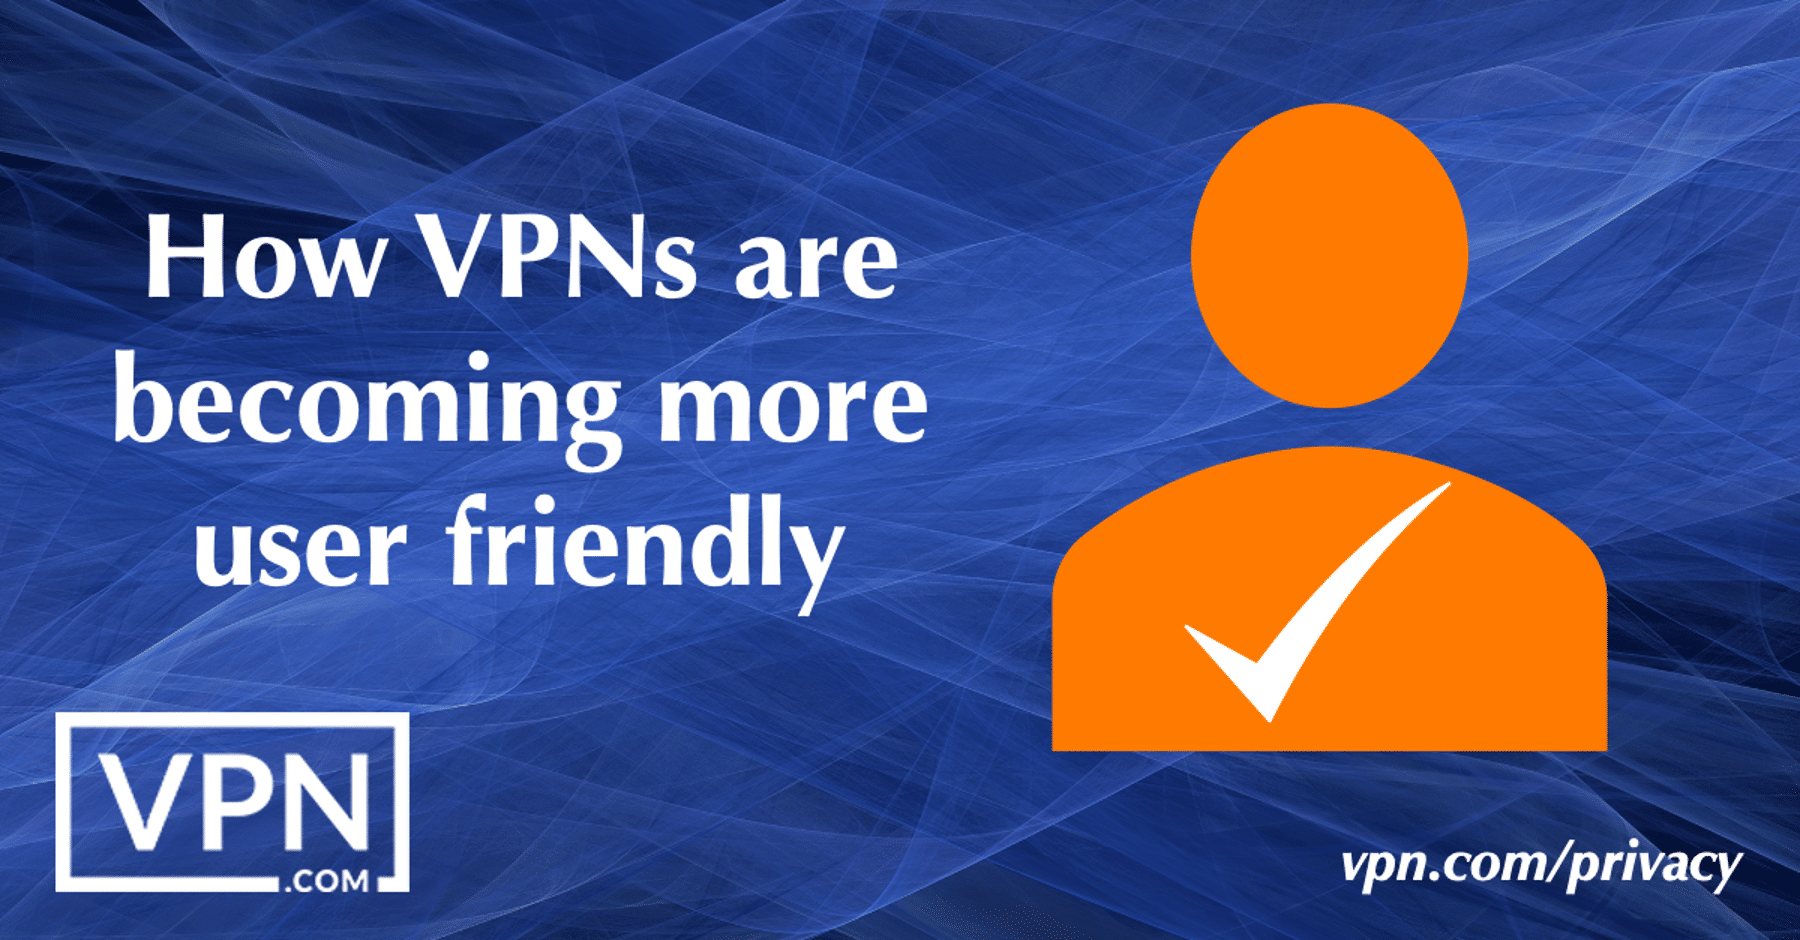 Jak VPN stają się bardziej przyjazne dla użytkownika.